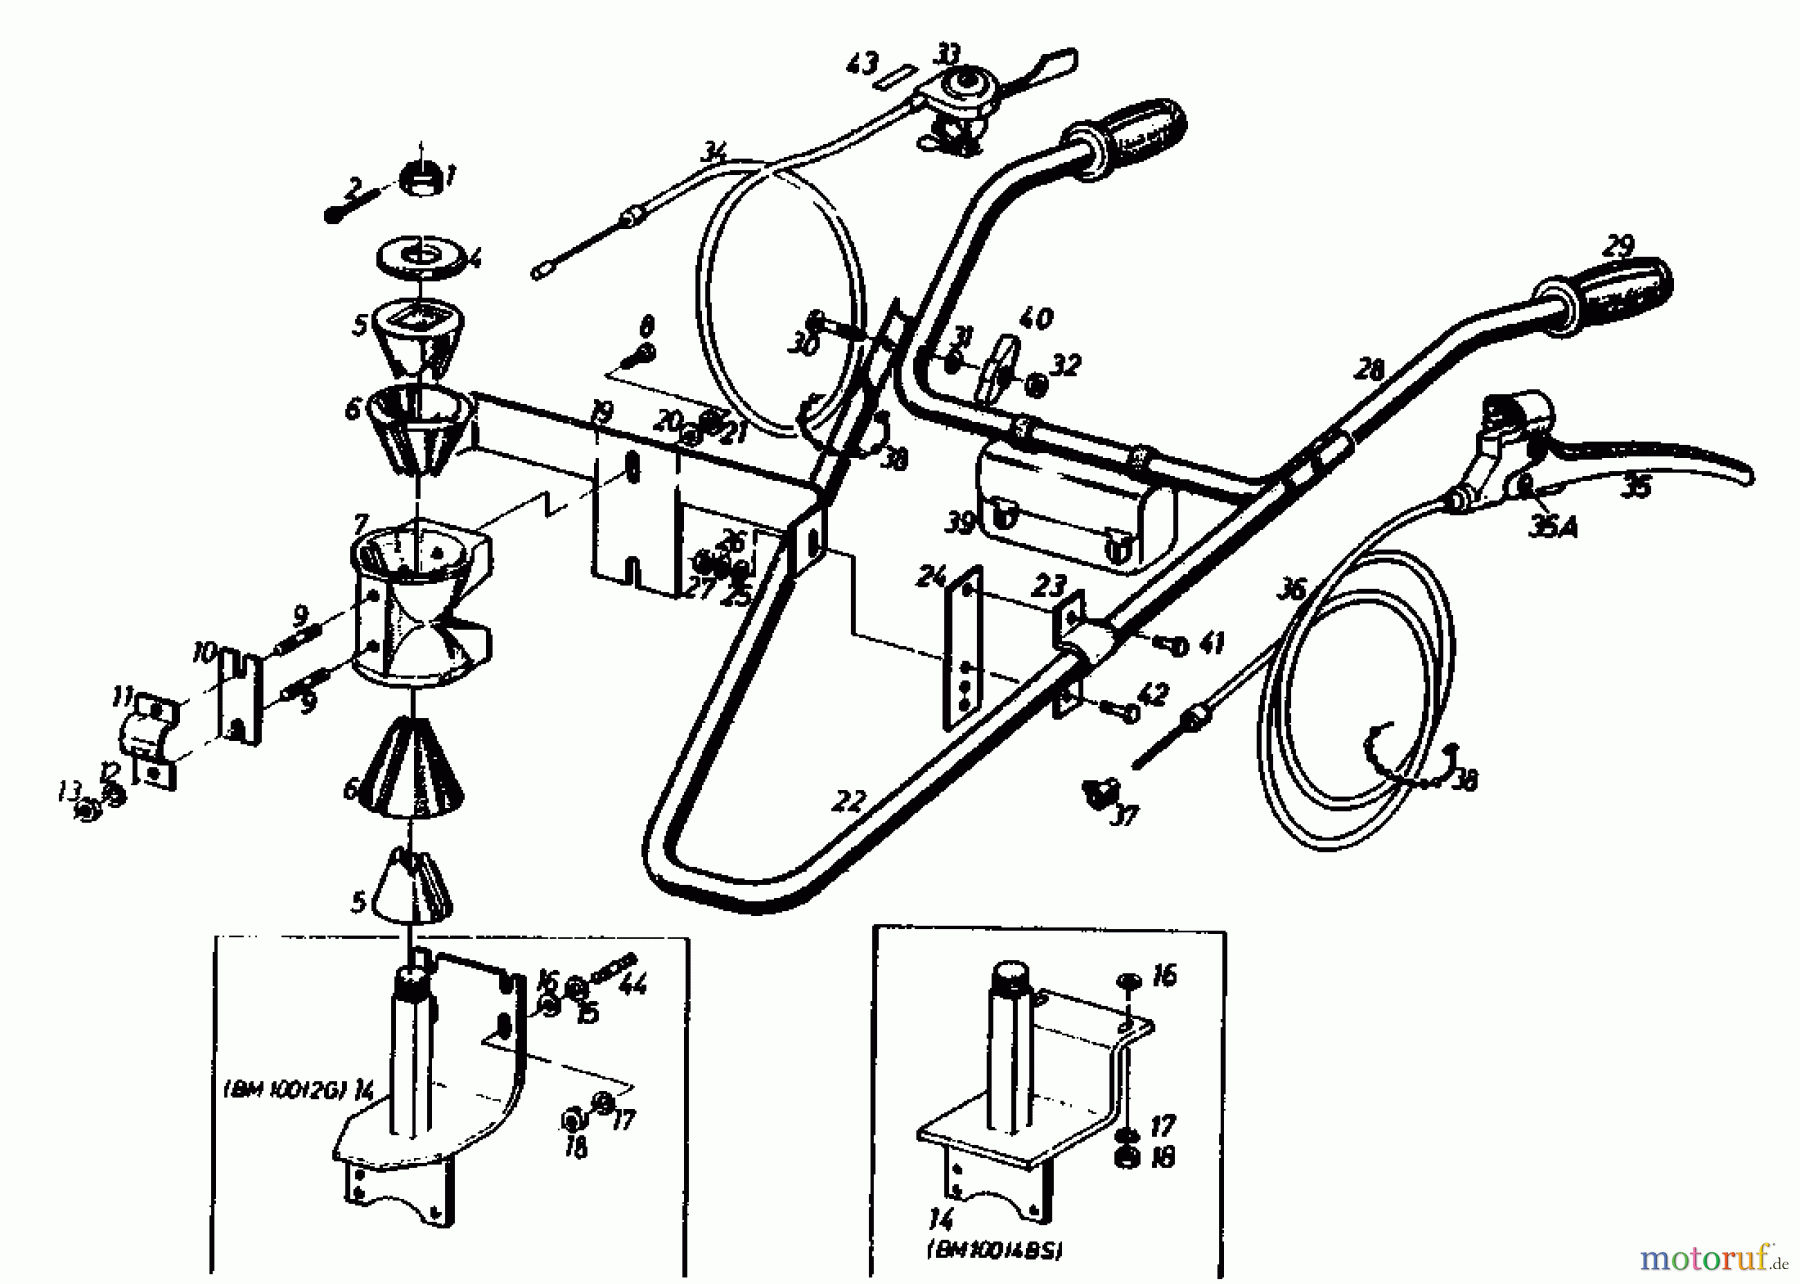  Gutbrod Cutter bar mower BM 100 4/BS 07507.02  (1990) Handle